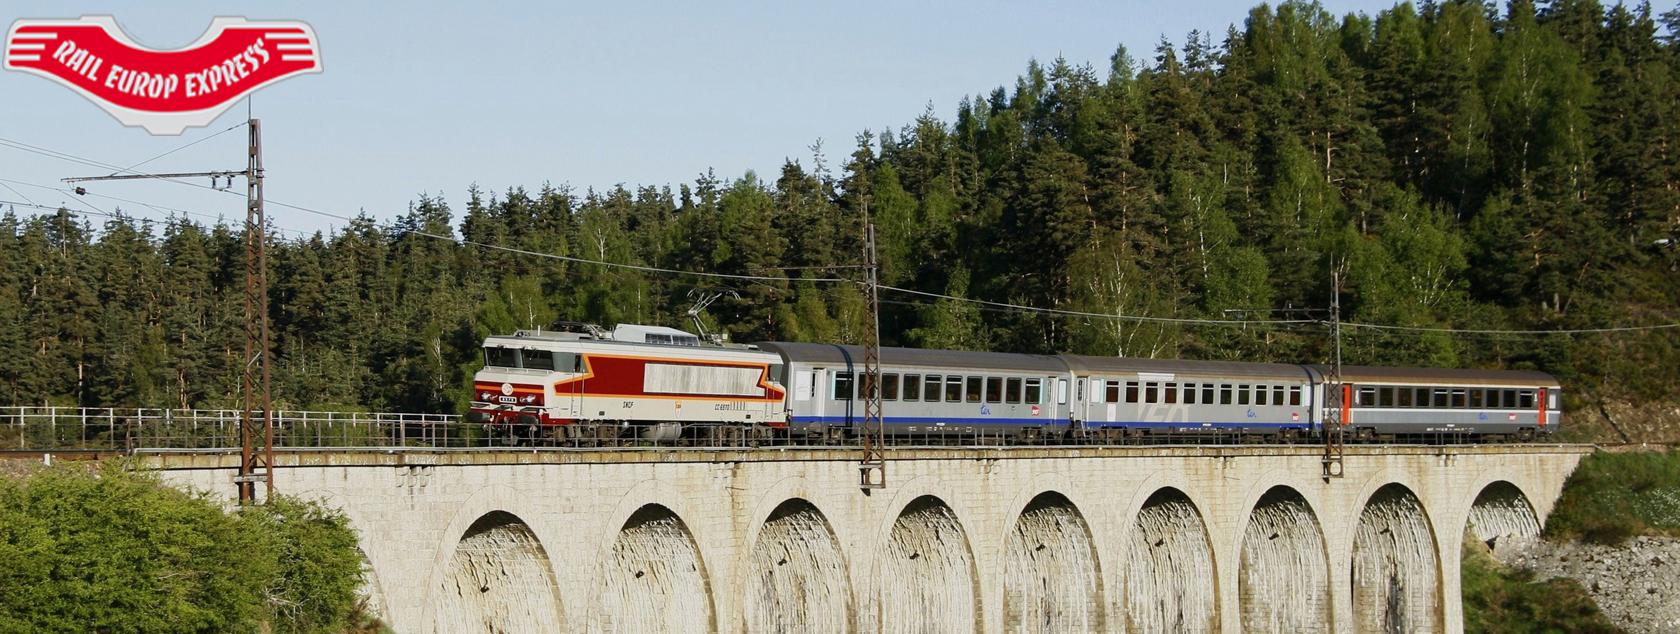 Bibliothèque d'images ferroviaires européennes